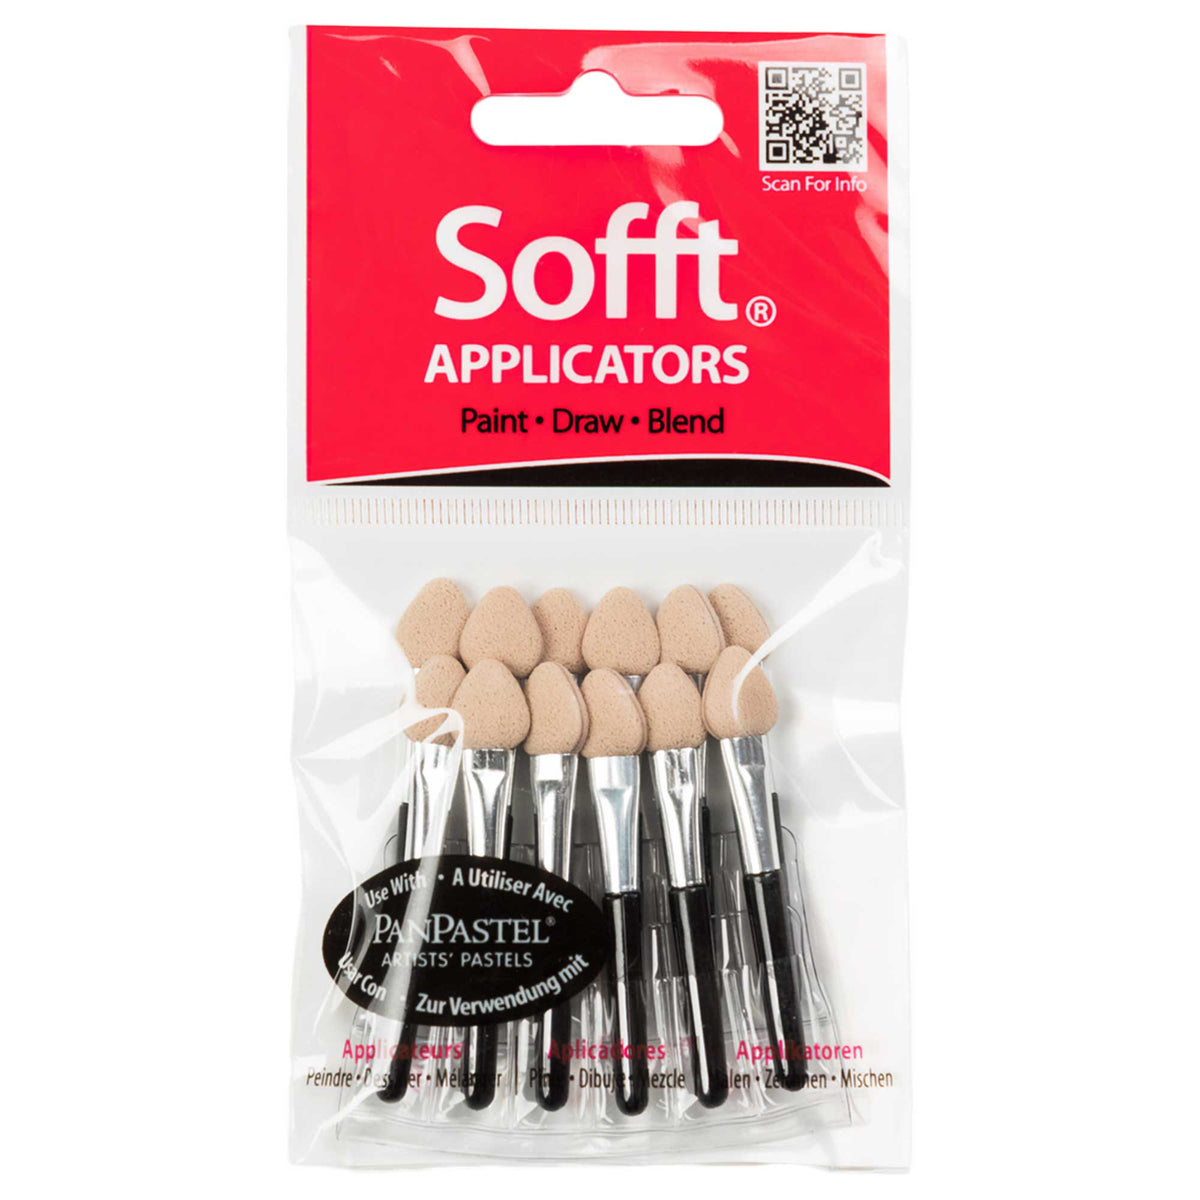 Pan Pastel - Sofft Mini Applicators - Pack of 12